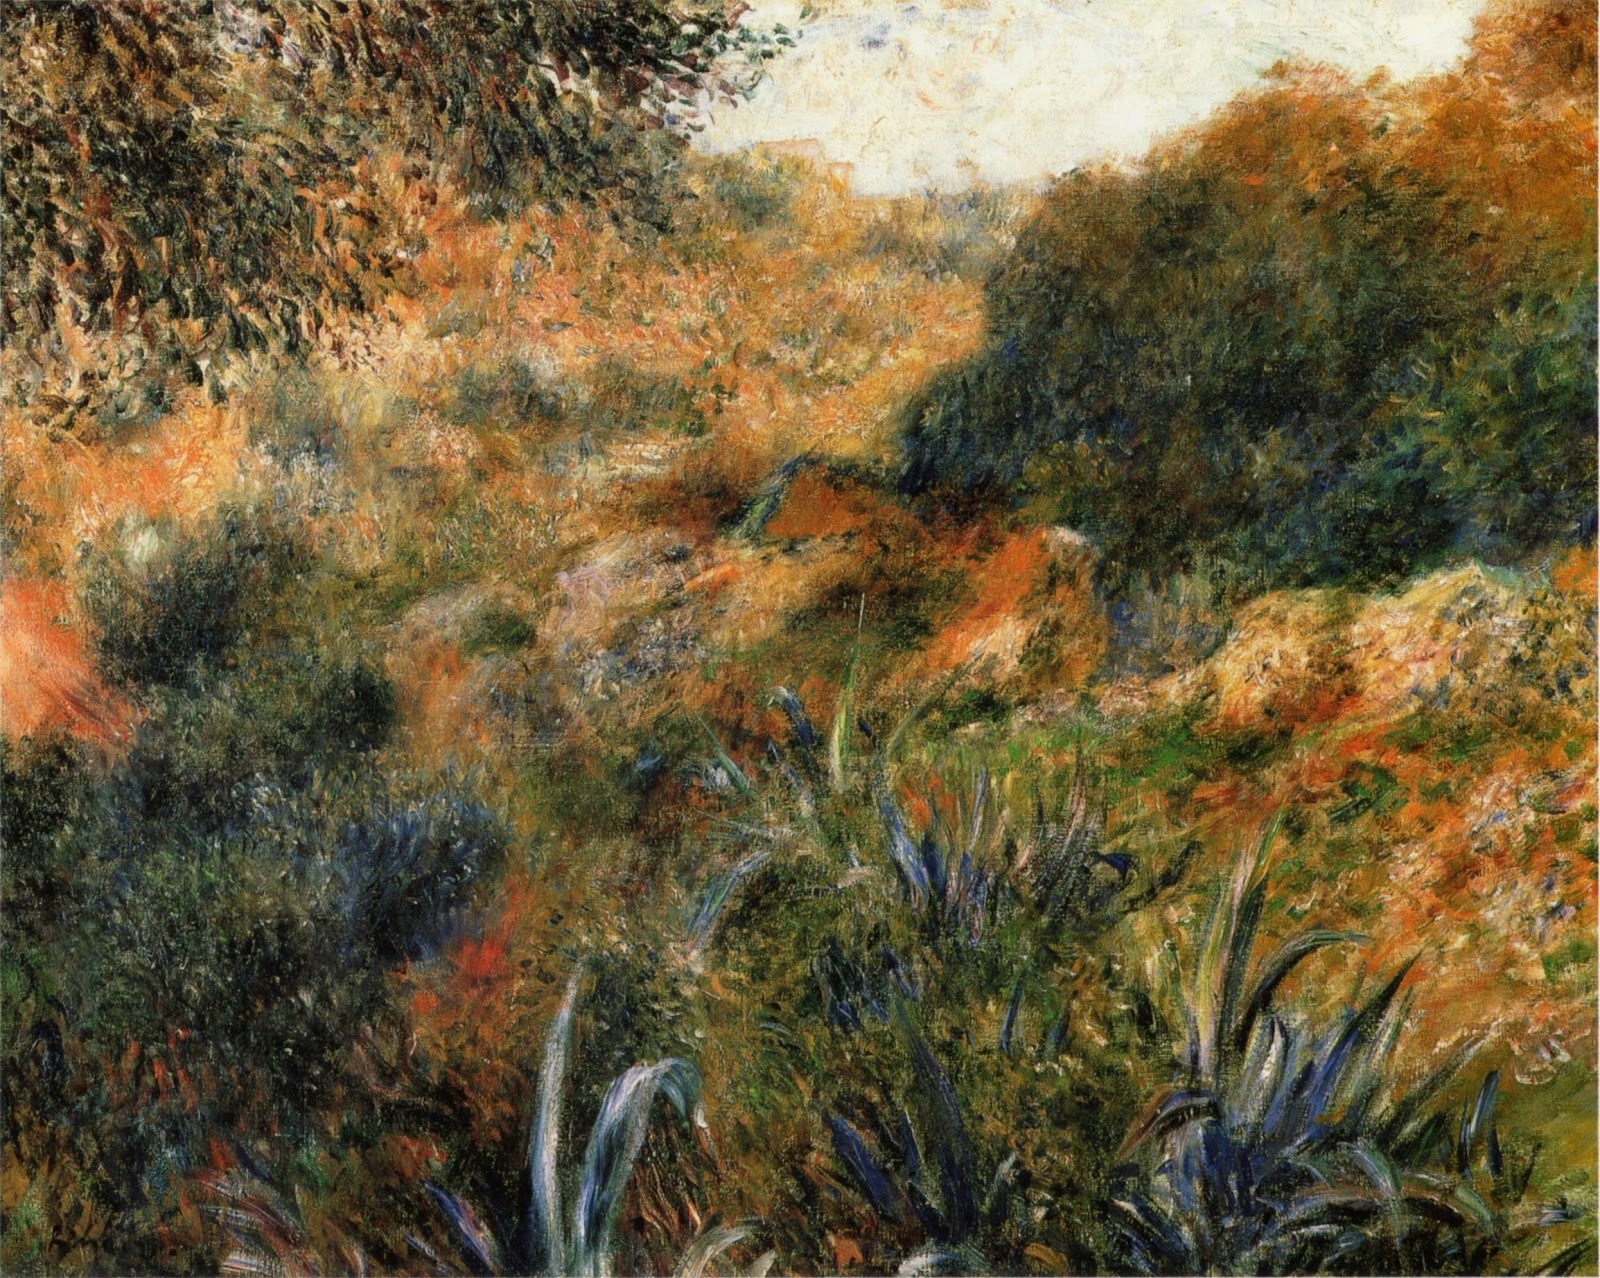 Pierre+Auguste+Renoir-1841-1-19 (622).jpg